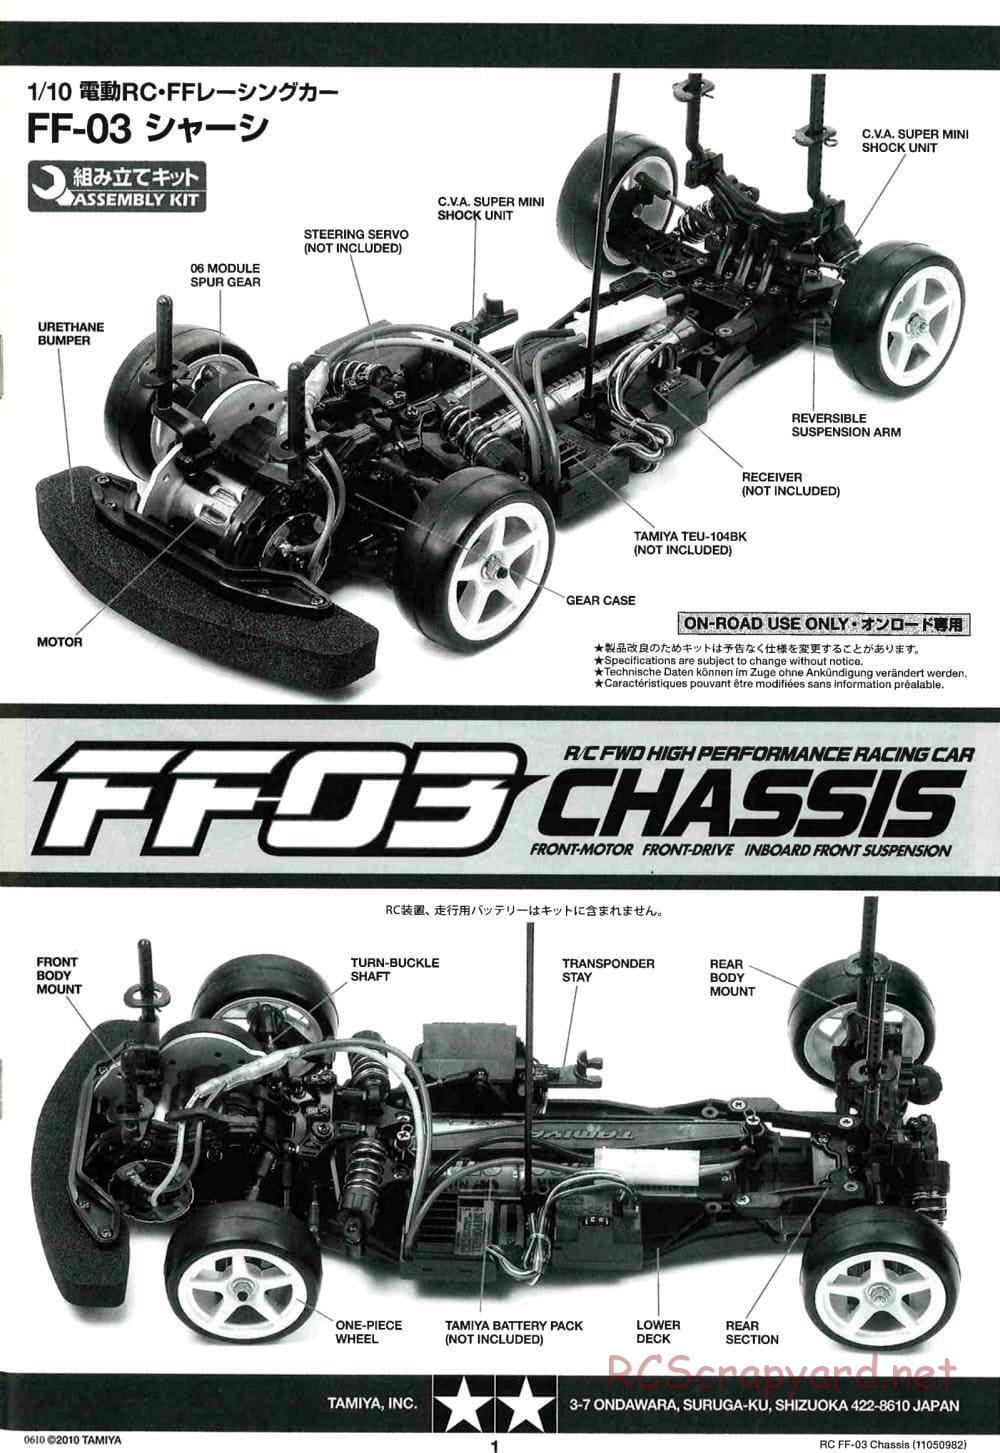 Tamiya - Castrol Honda Civic VTi - FF-03 Chassis - Manual - Page 1